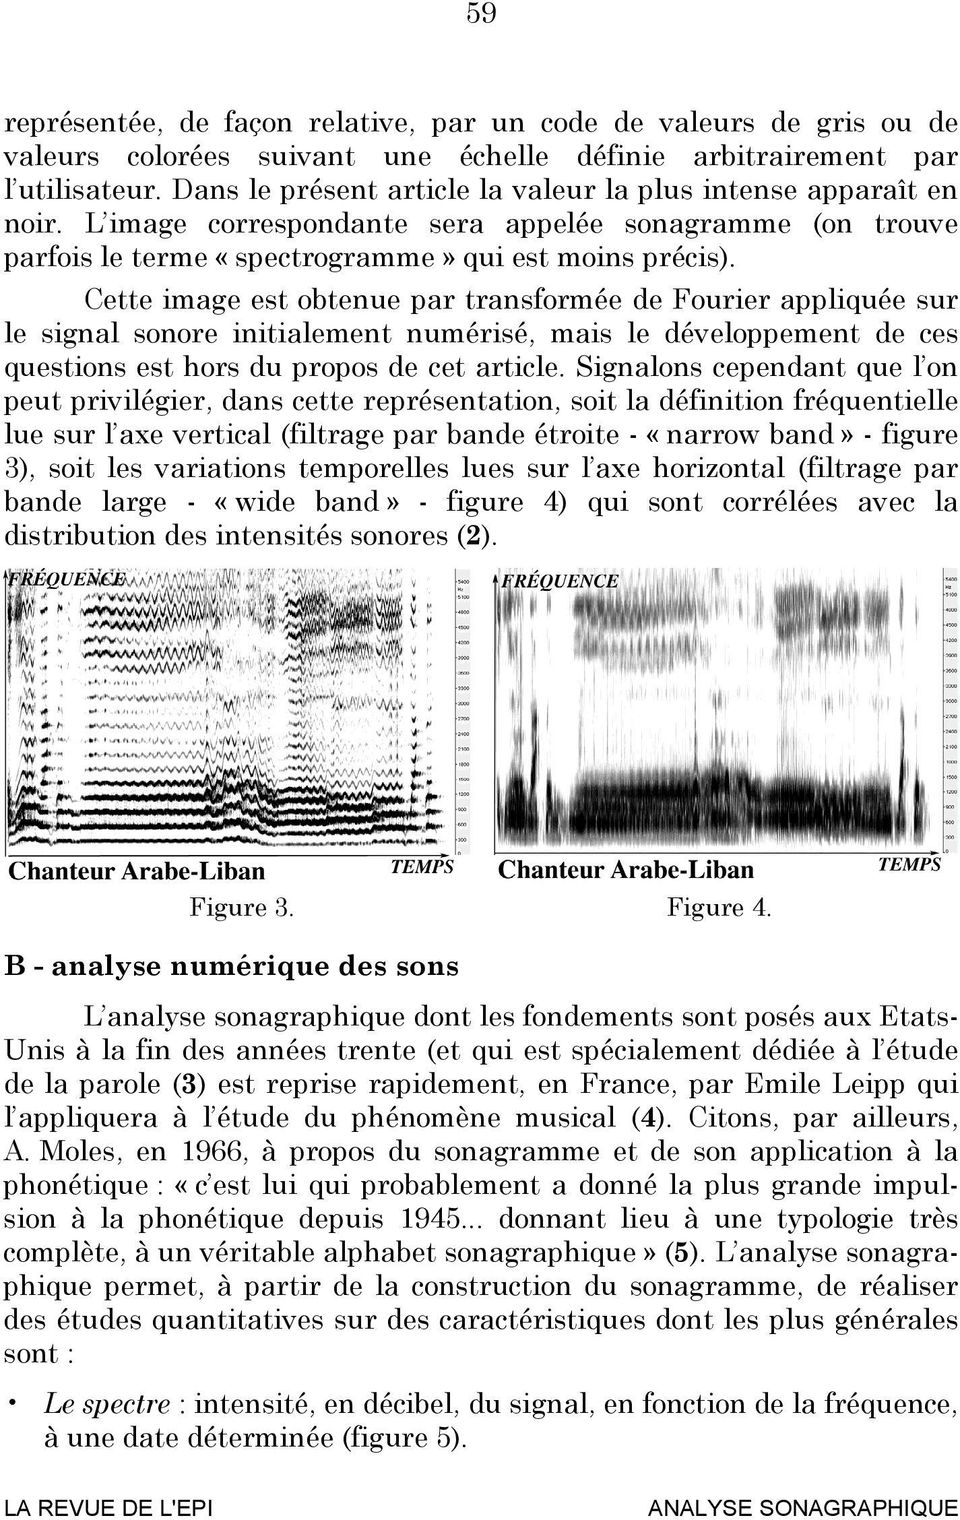 Cette image est obtenue par transformée de Fourier appliquée sur le signal sonore initialement numérisé, mais le développement de ces questions est hors du propos de cet article.